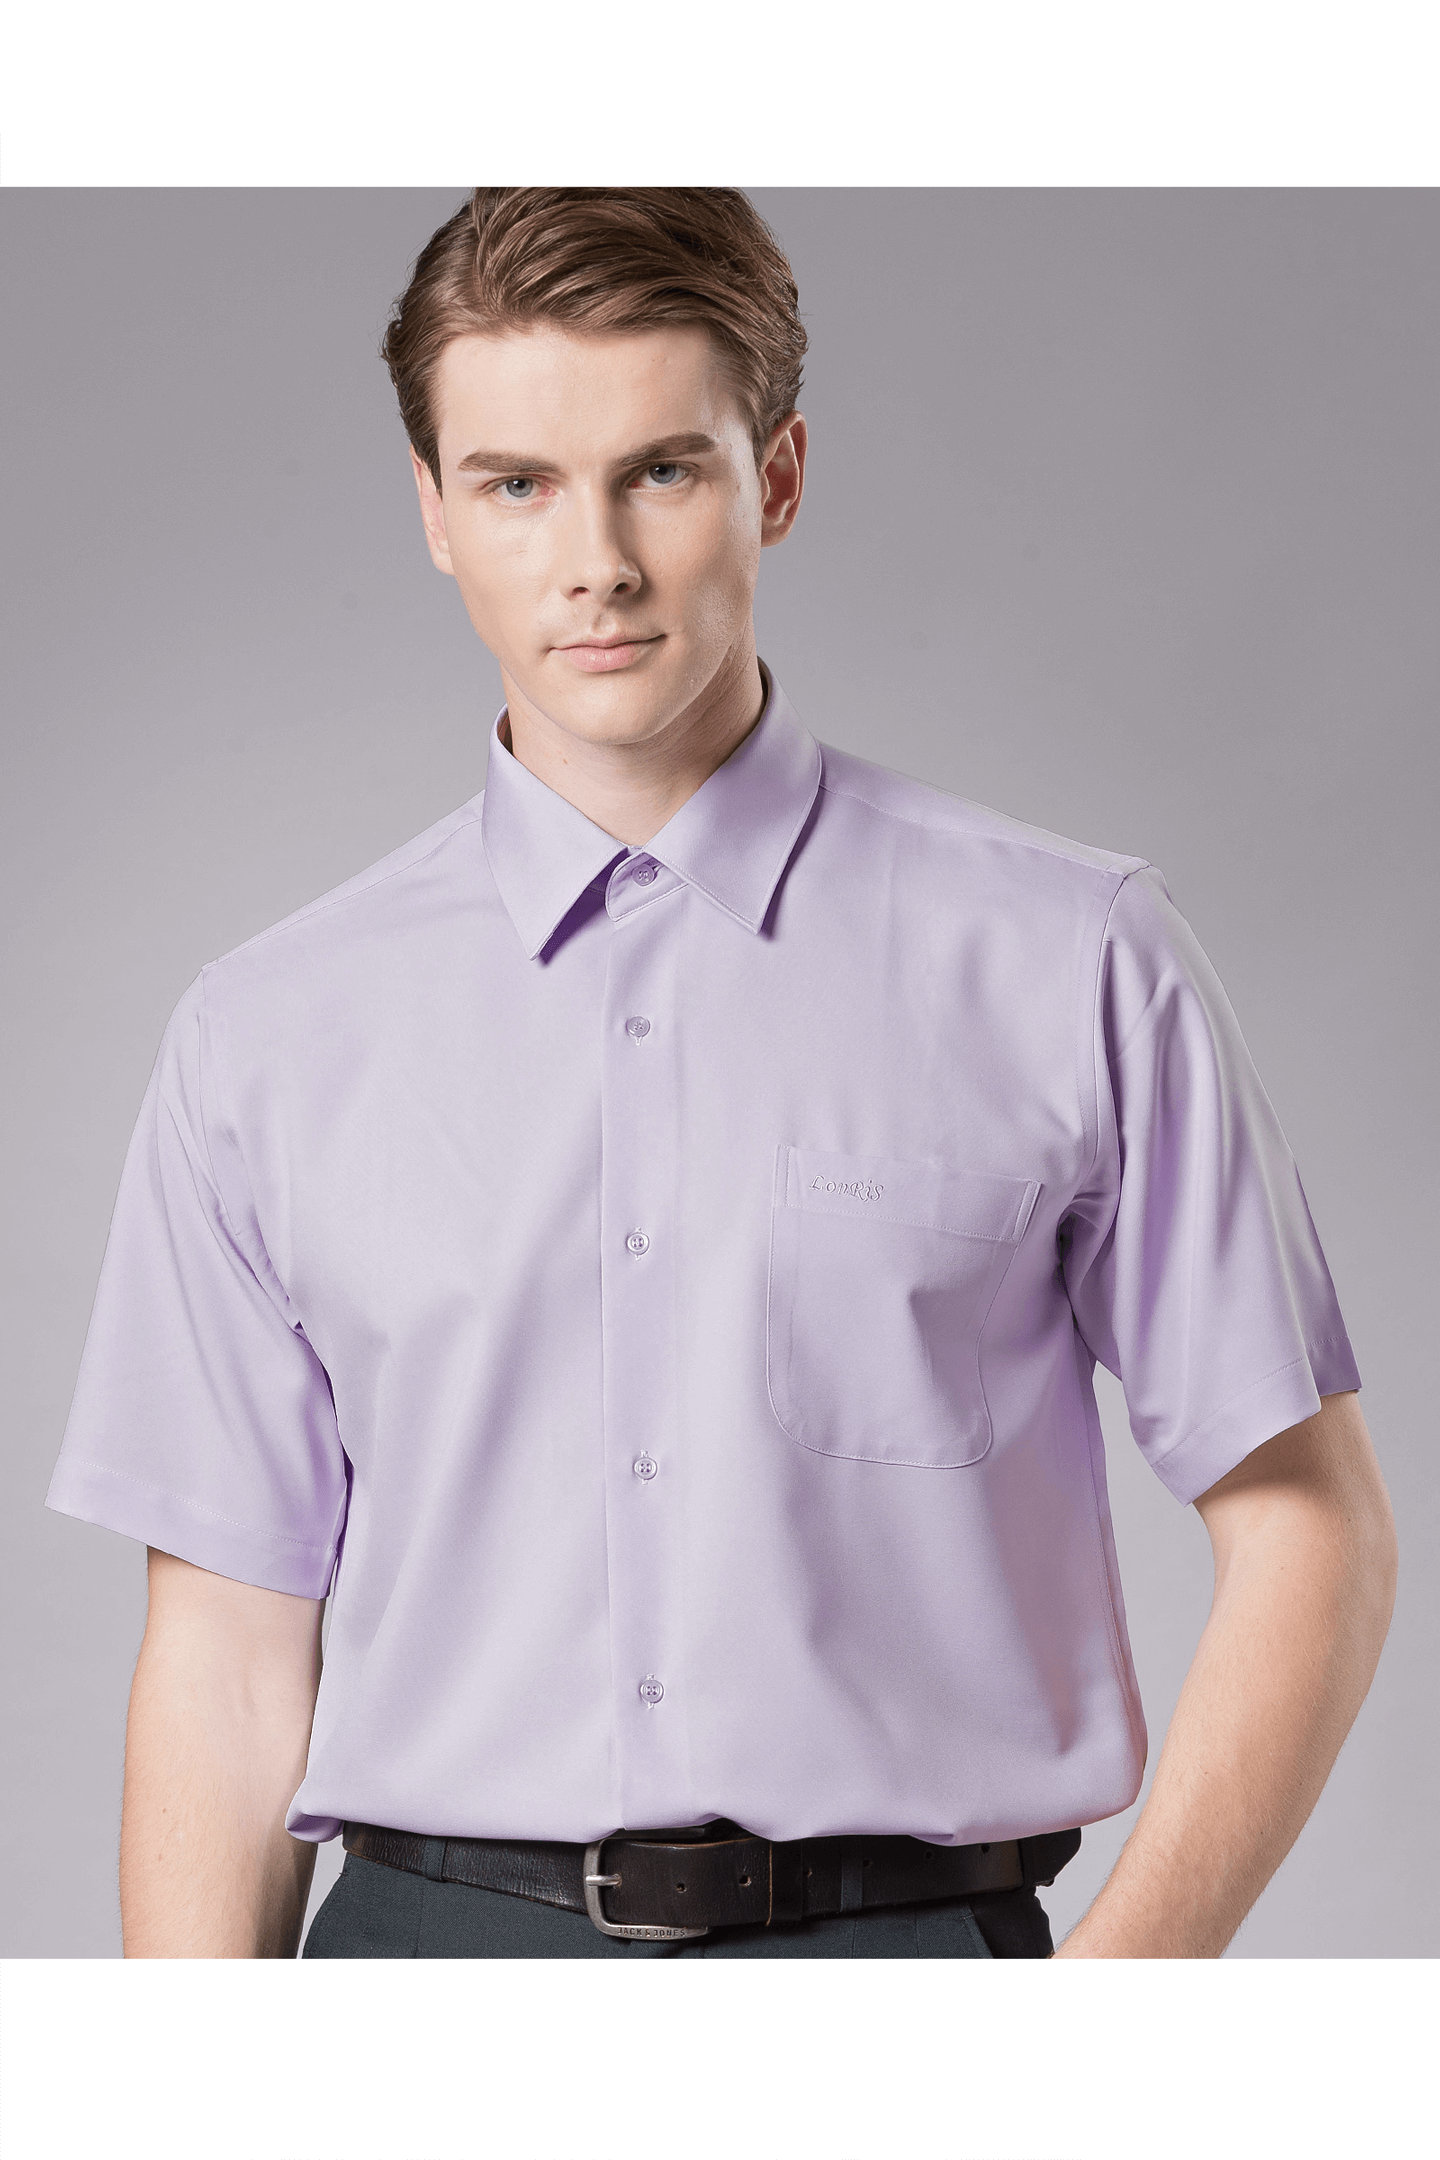 紫色素面短袖襯衫/抗皺 吸濕排汗